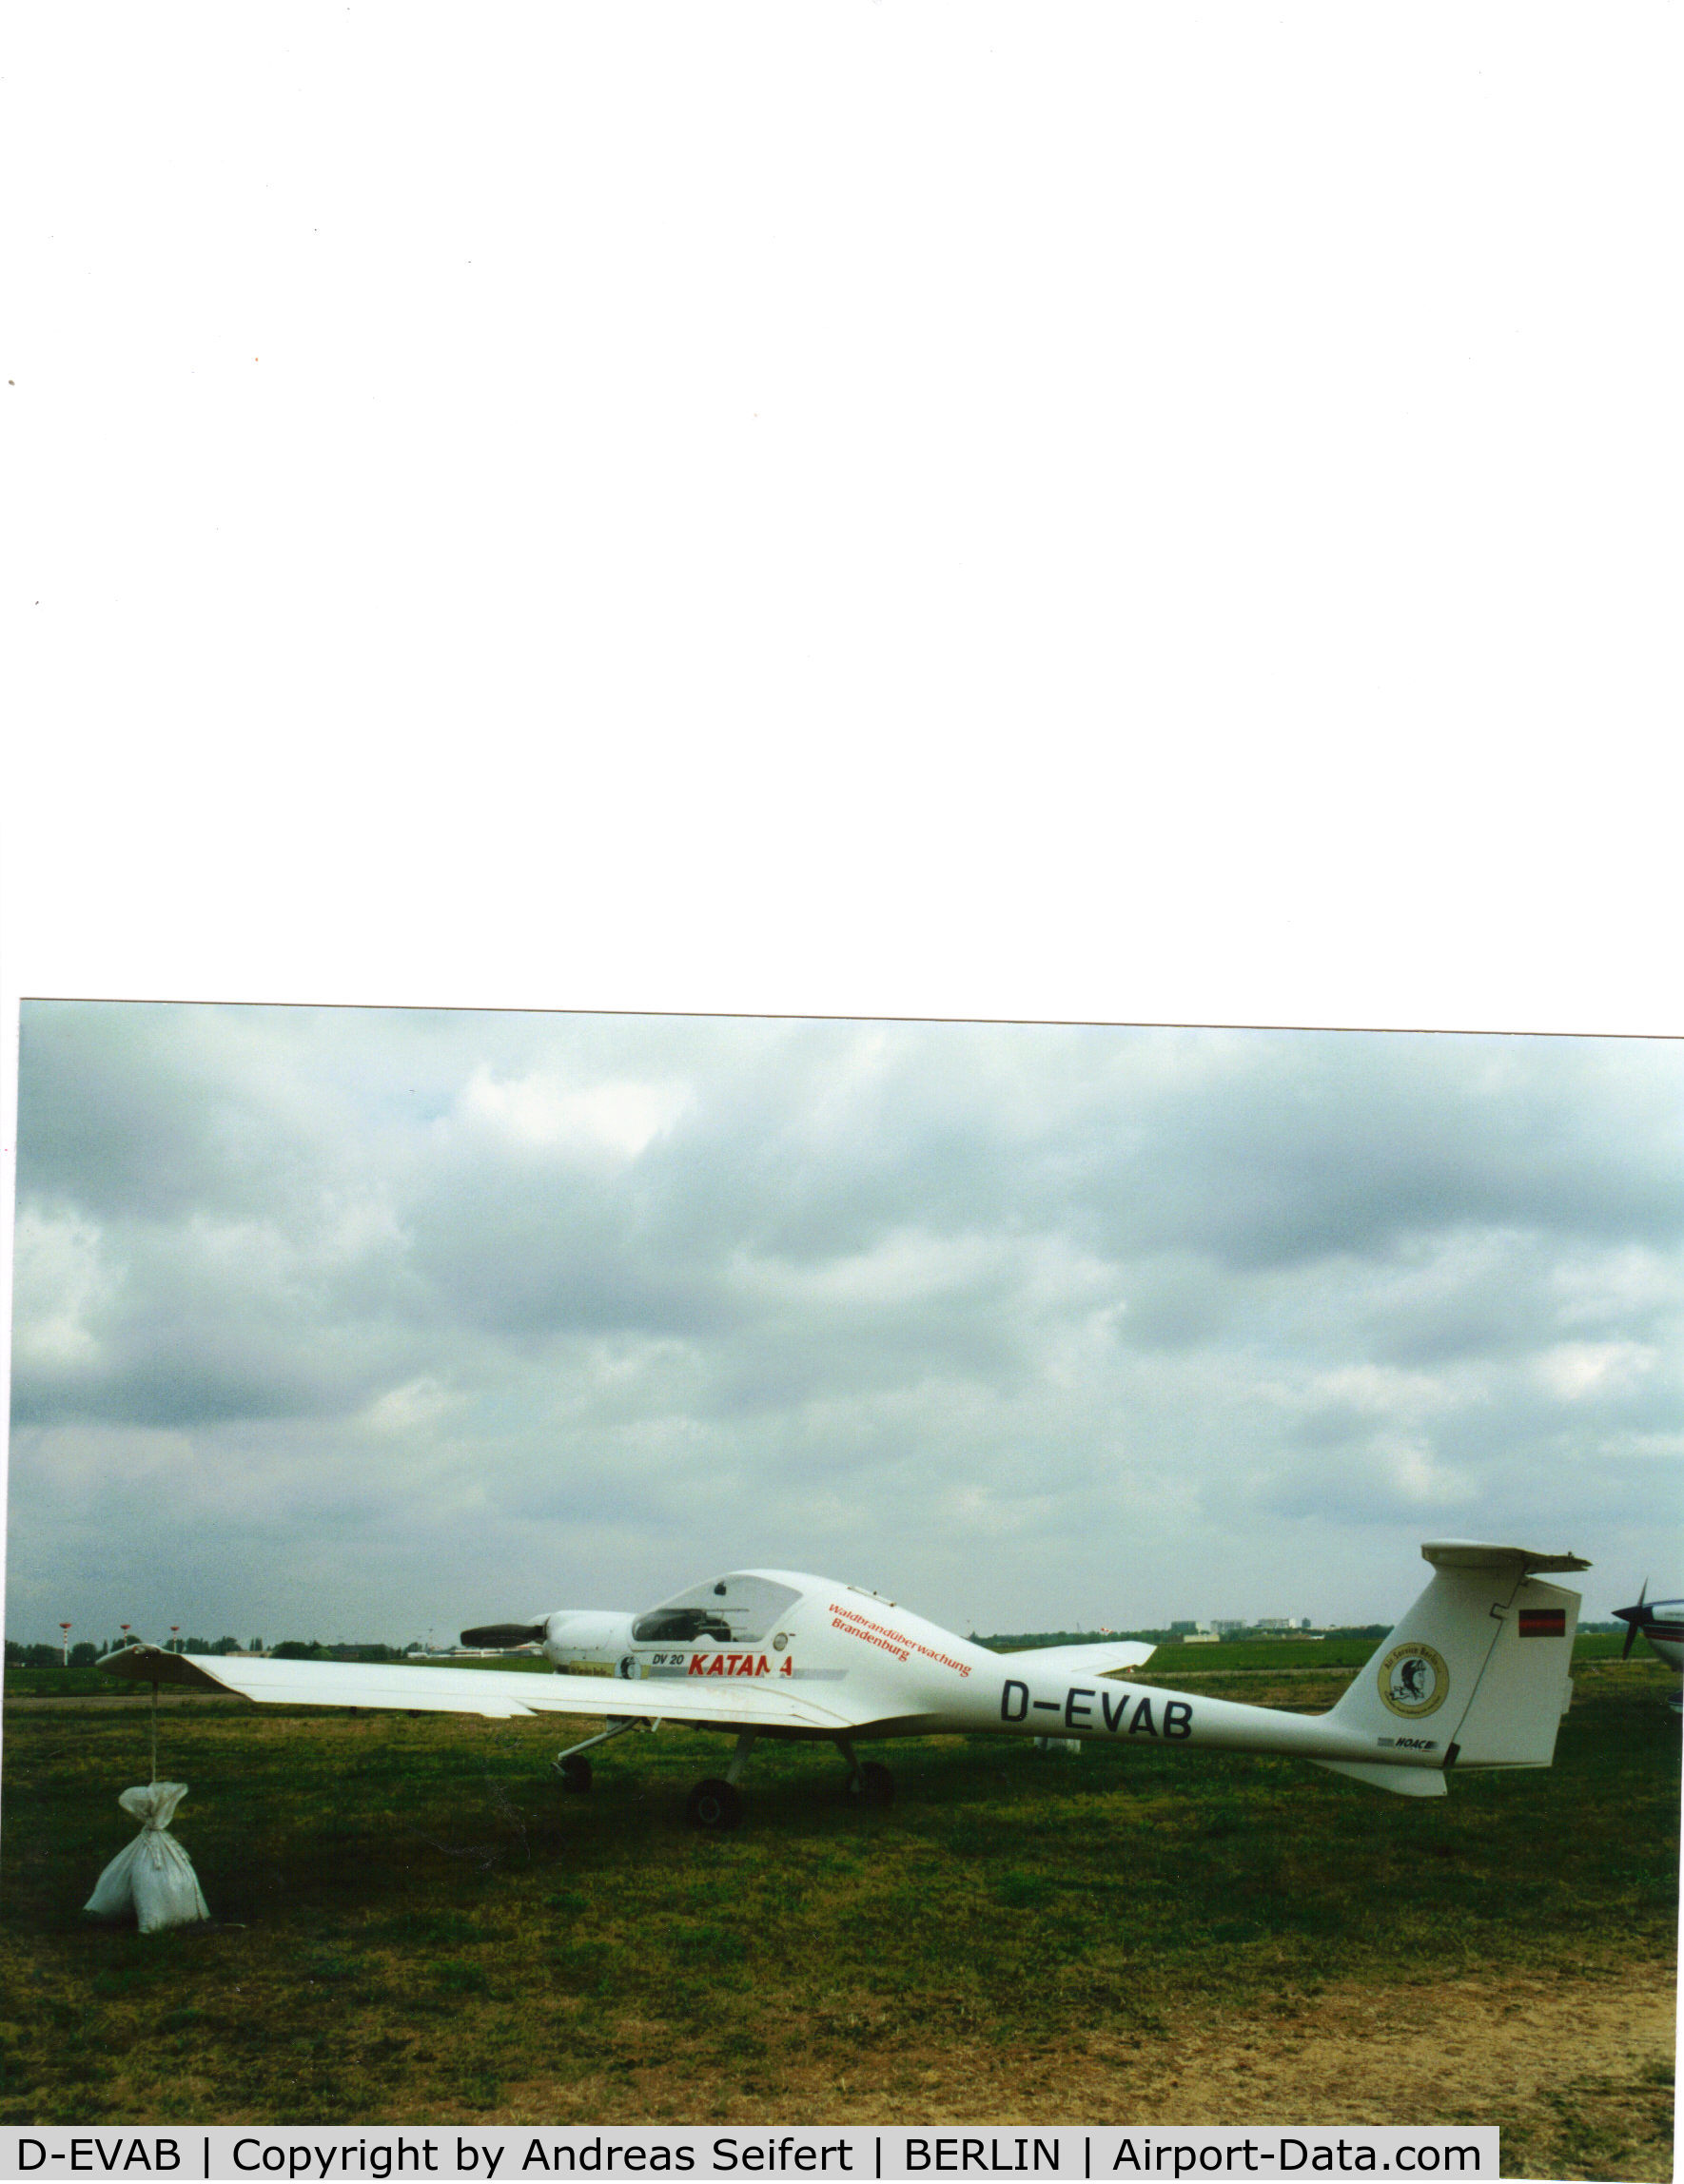 D-EVAB, HOAC DV-20 Katana C/N 20025, Berlin ILA 2000